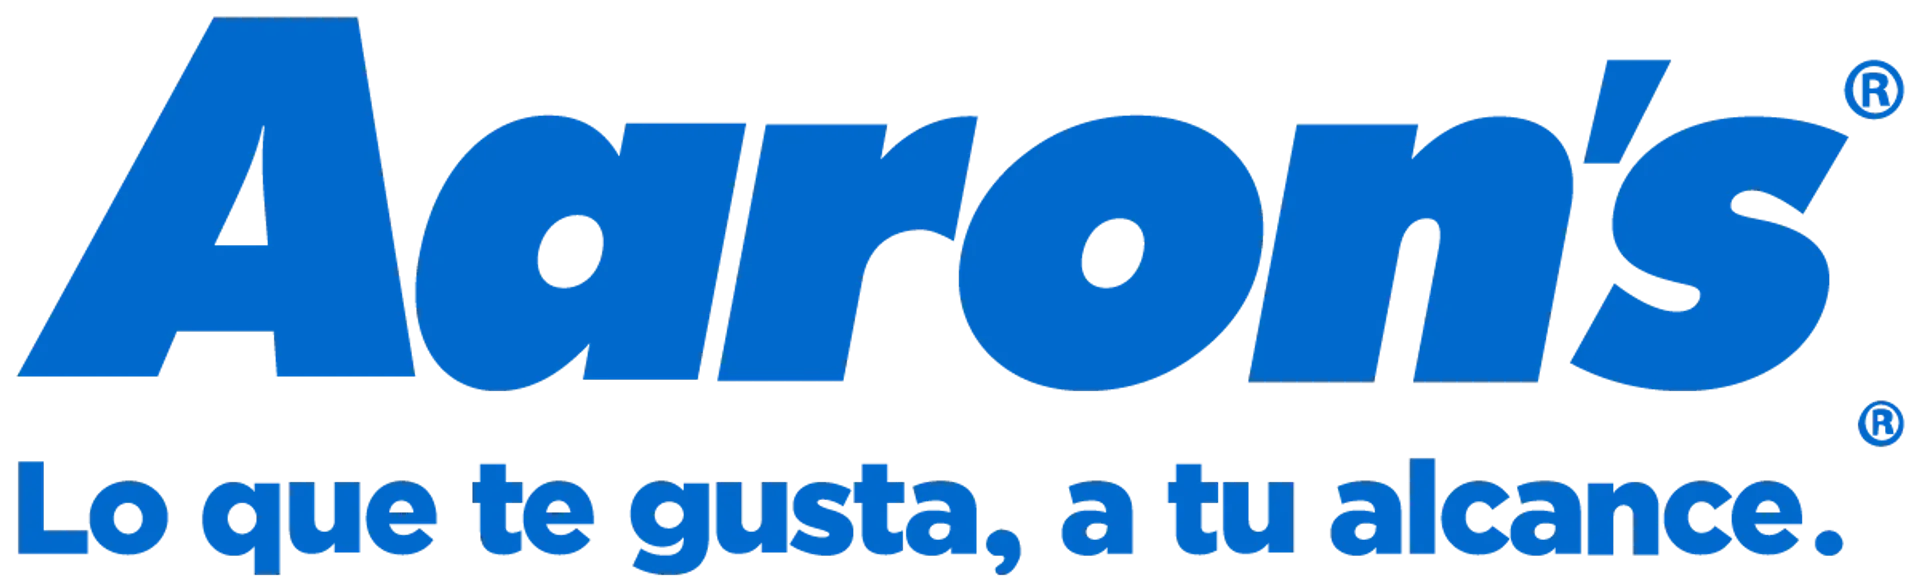 AARON'S logo de catálogo